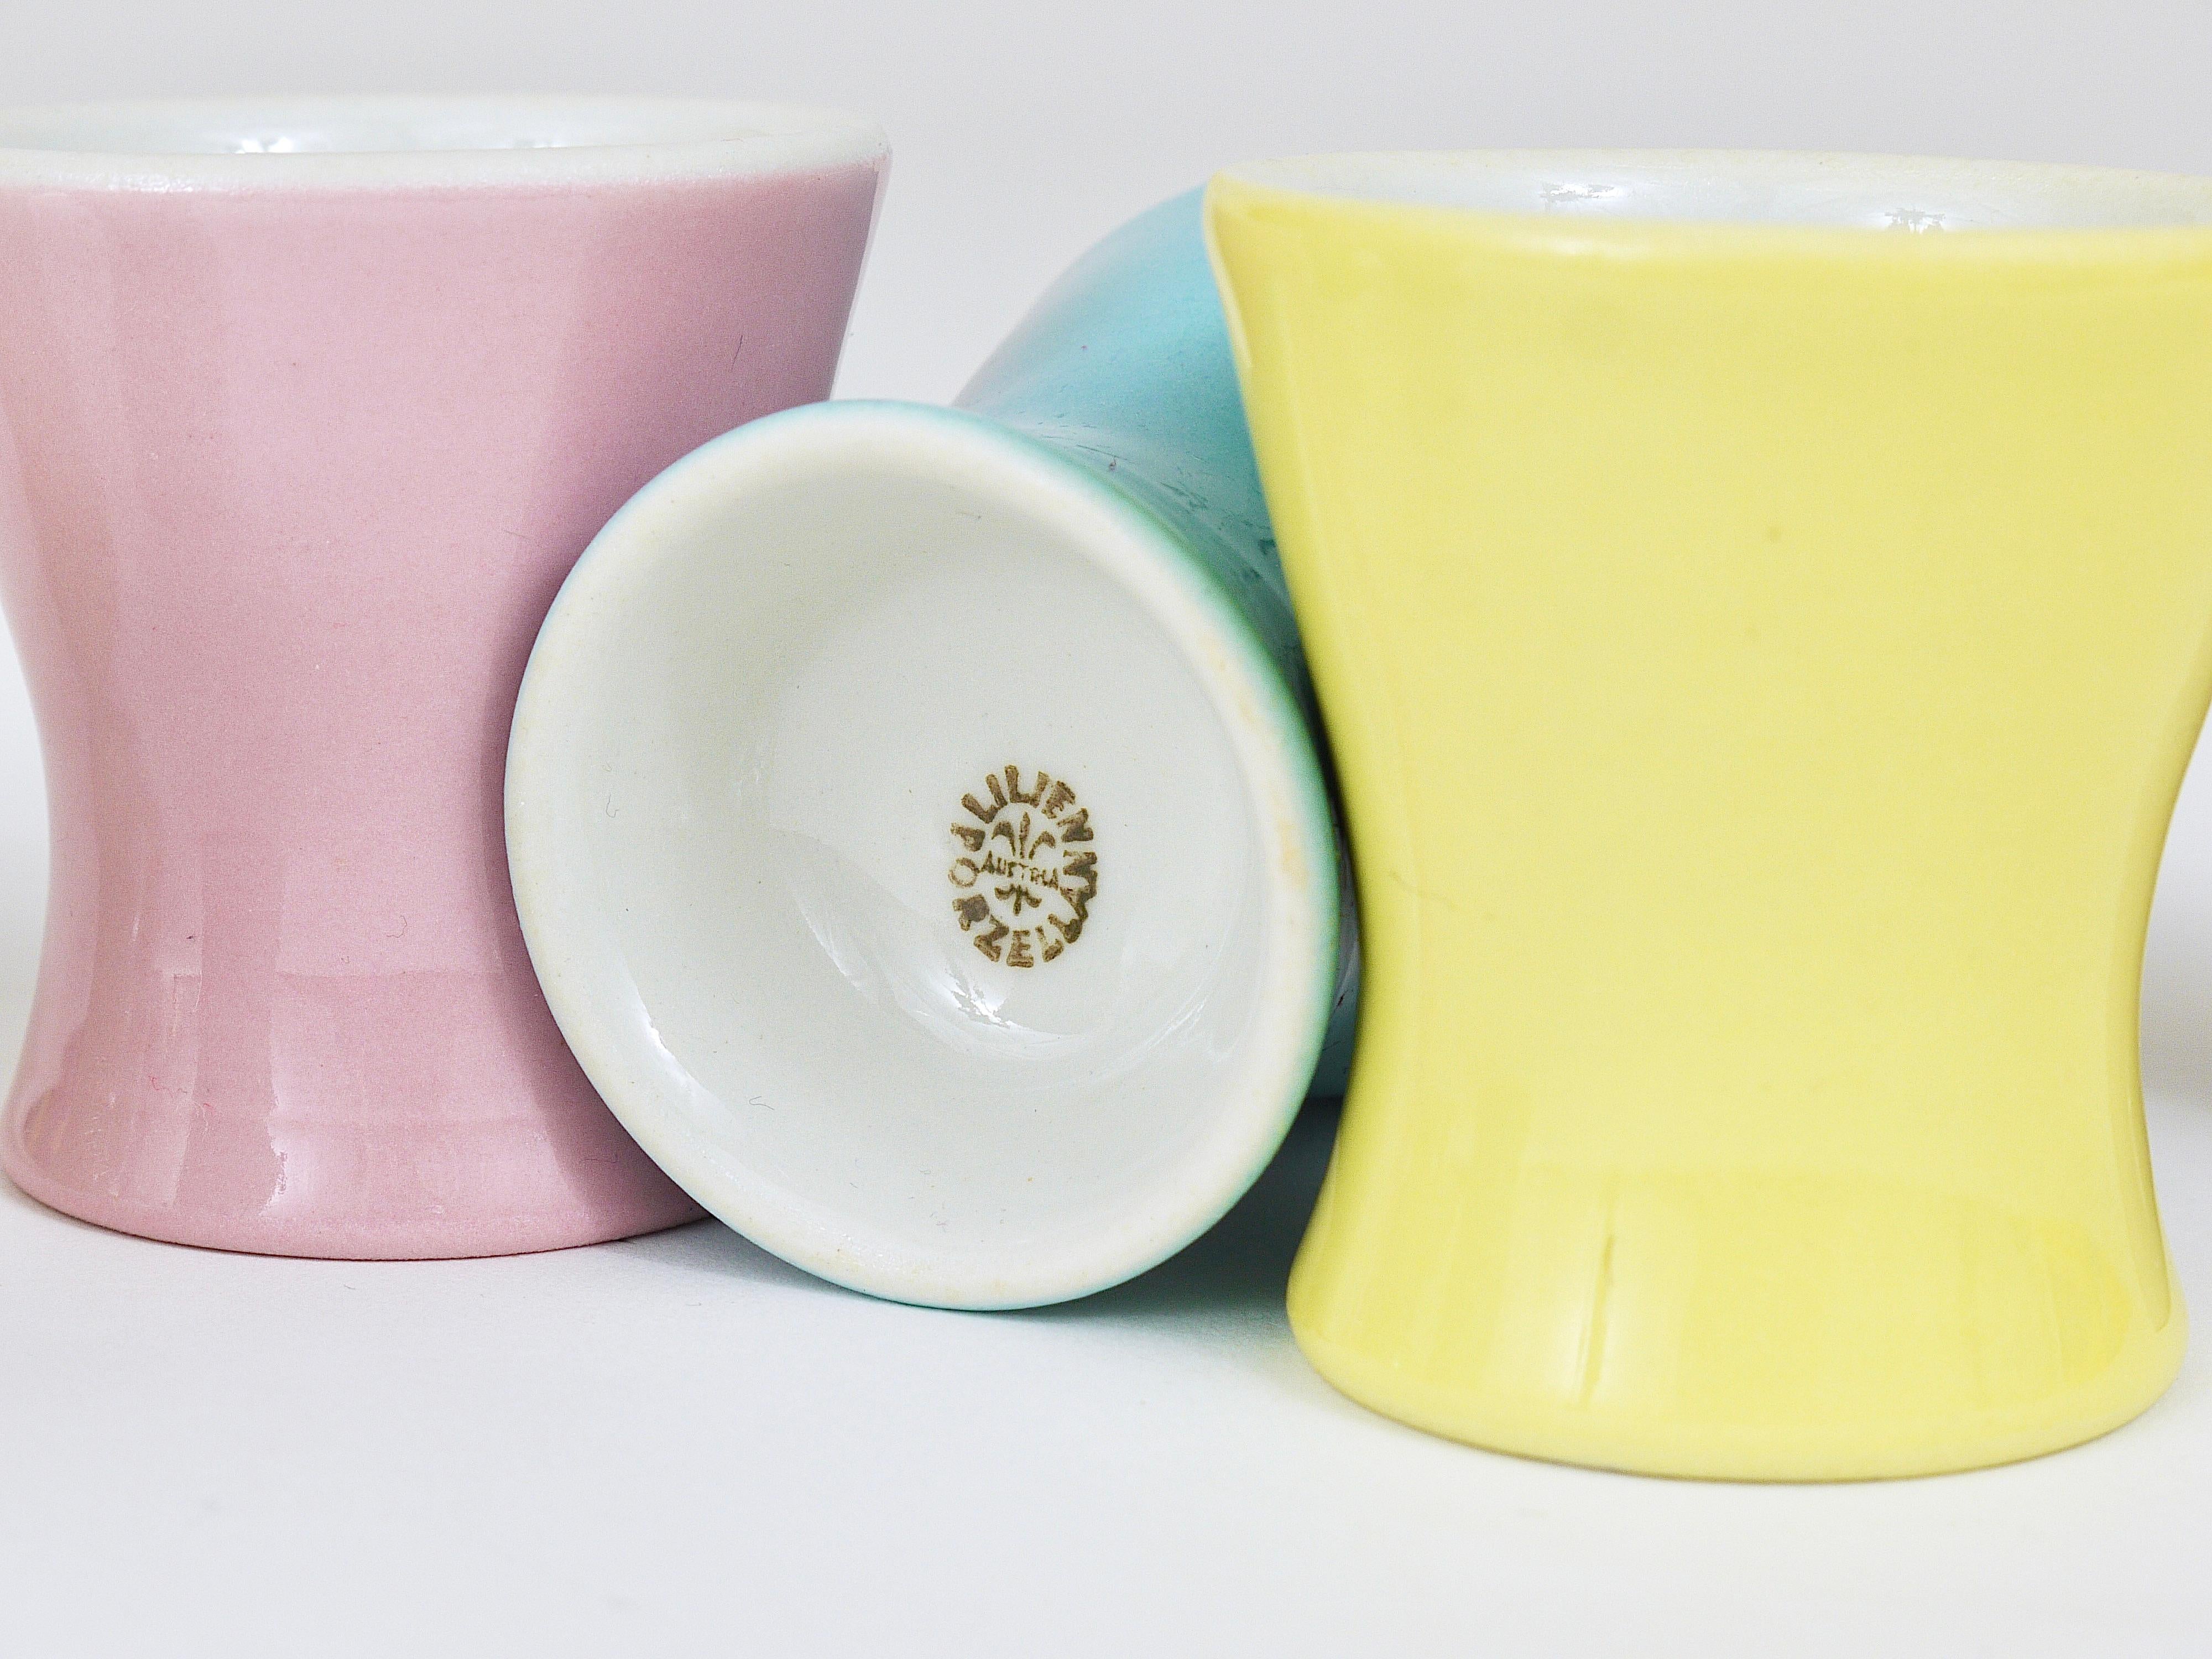 6 Midcentury Pastel Daisy Porcelain Egg Cups, Lilien, Austria, 1950s For Sale 3